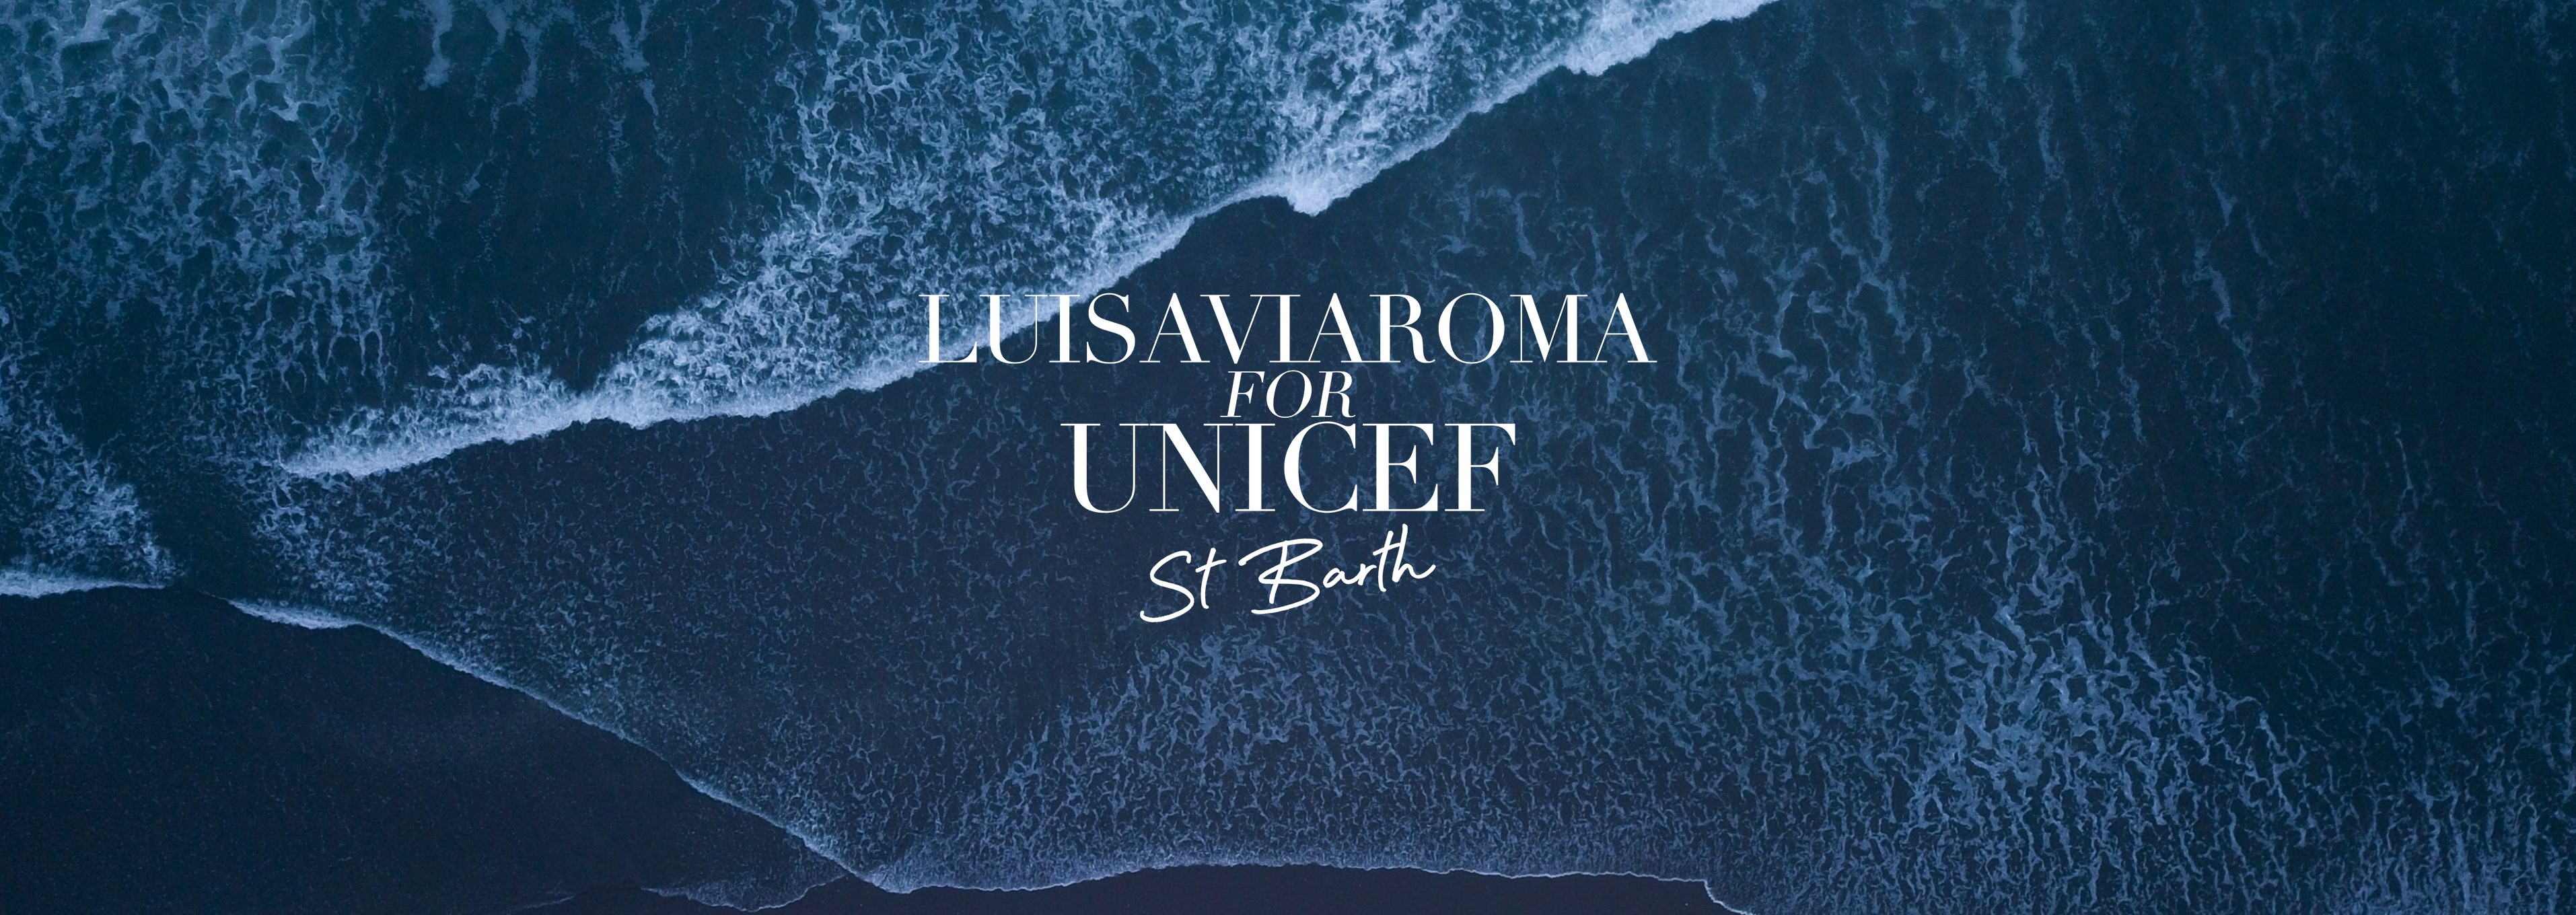 LuisaViaRoma en St. Barth para Unicef 2021